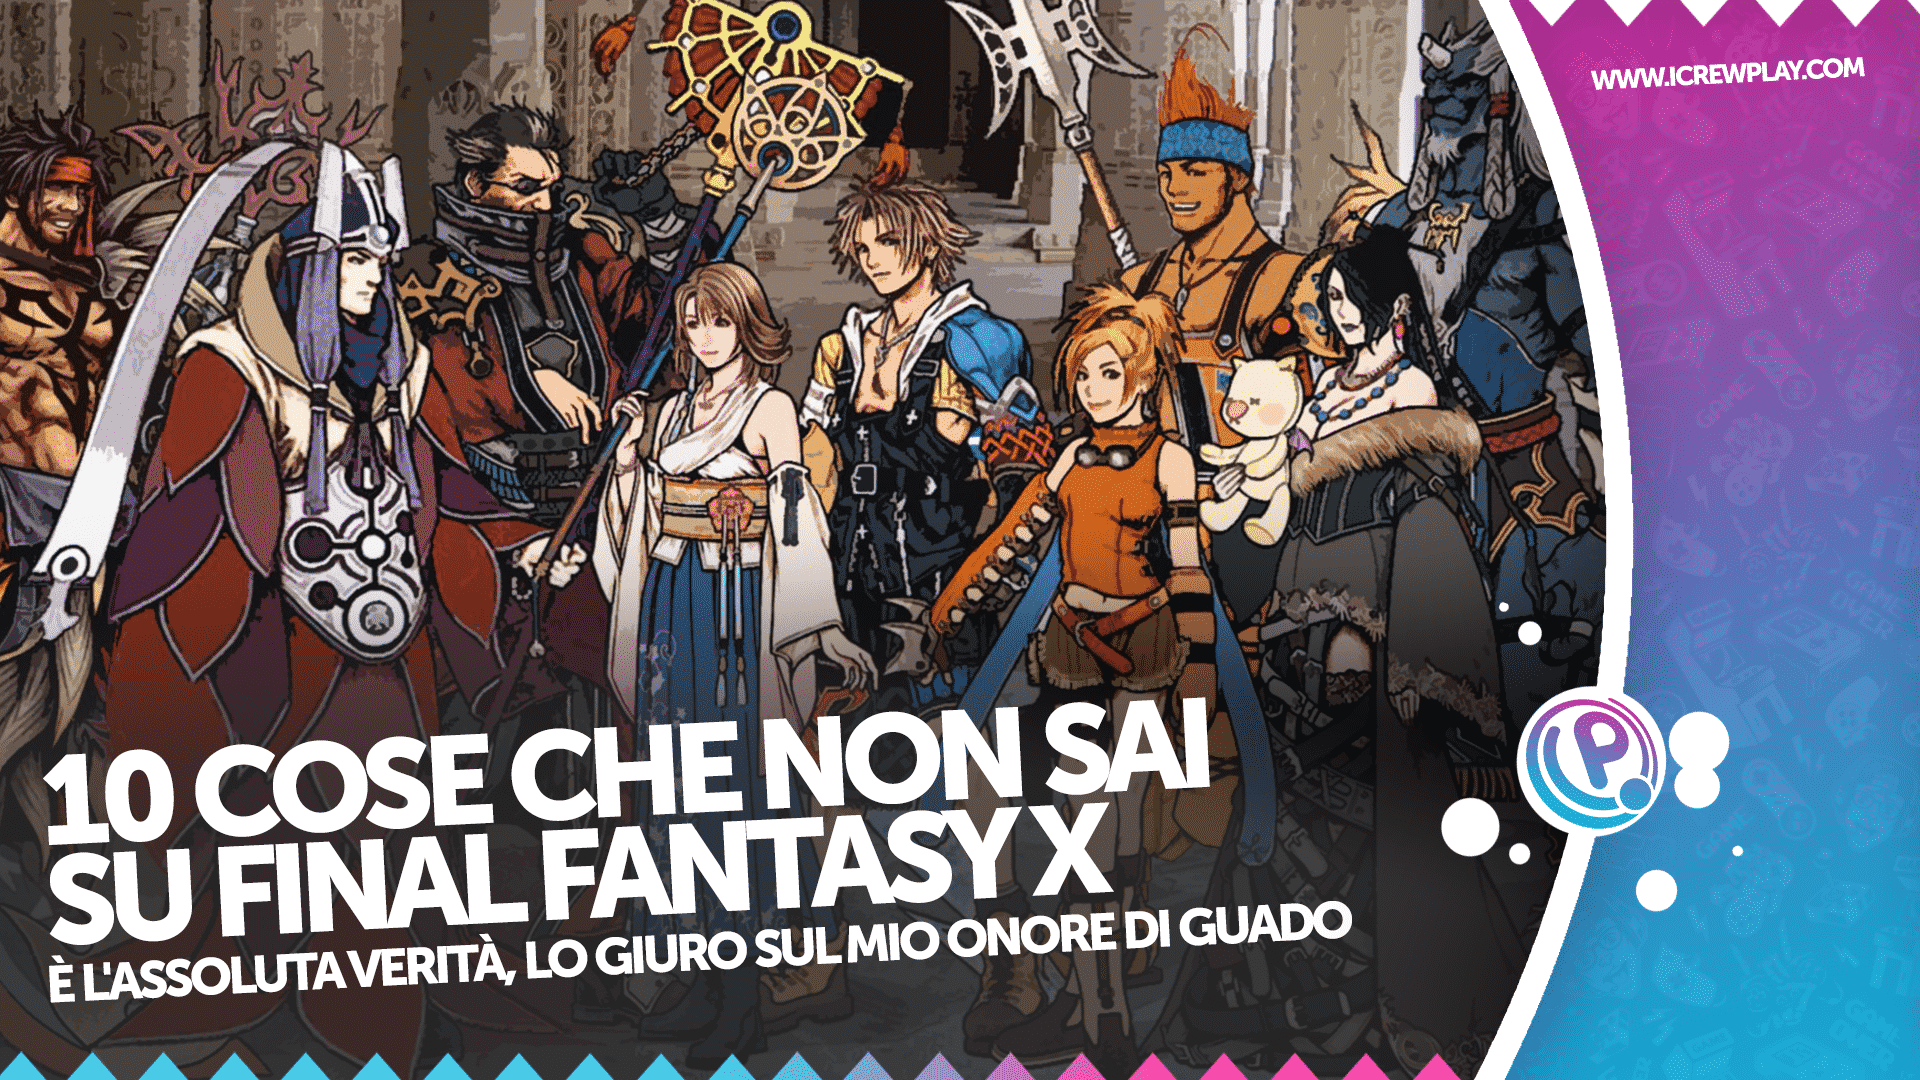 10 cose che non sai su Final Fantasy X 18